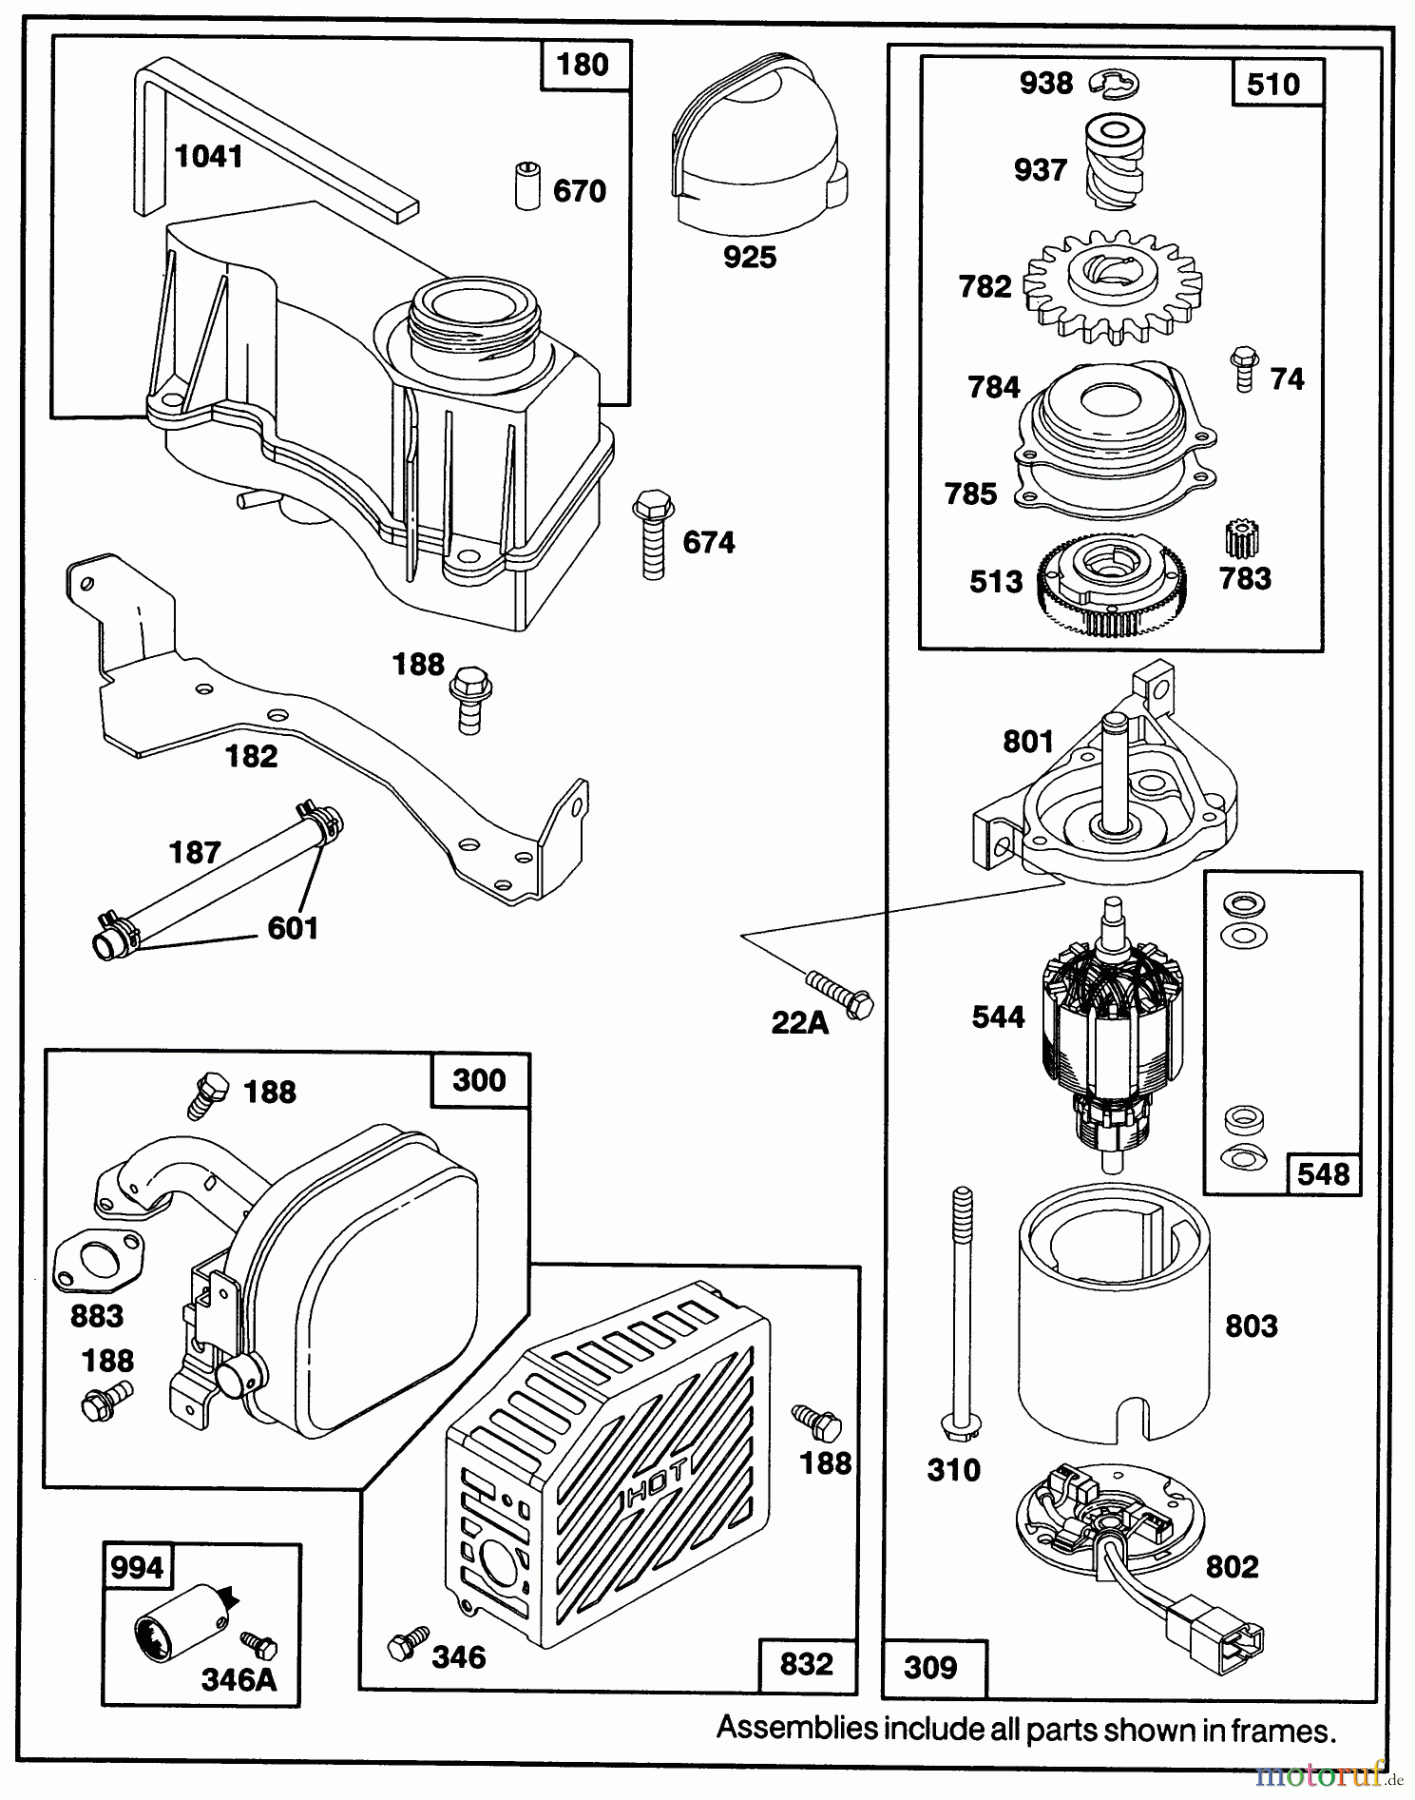  Toro Neu Mowers, Walk-Behind Seite 1 20210 - Toro Lawnmower, 1991 (1000001-1999999) ENGINE GTS-150 77-8990 #4